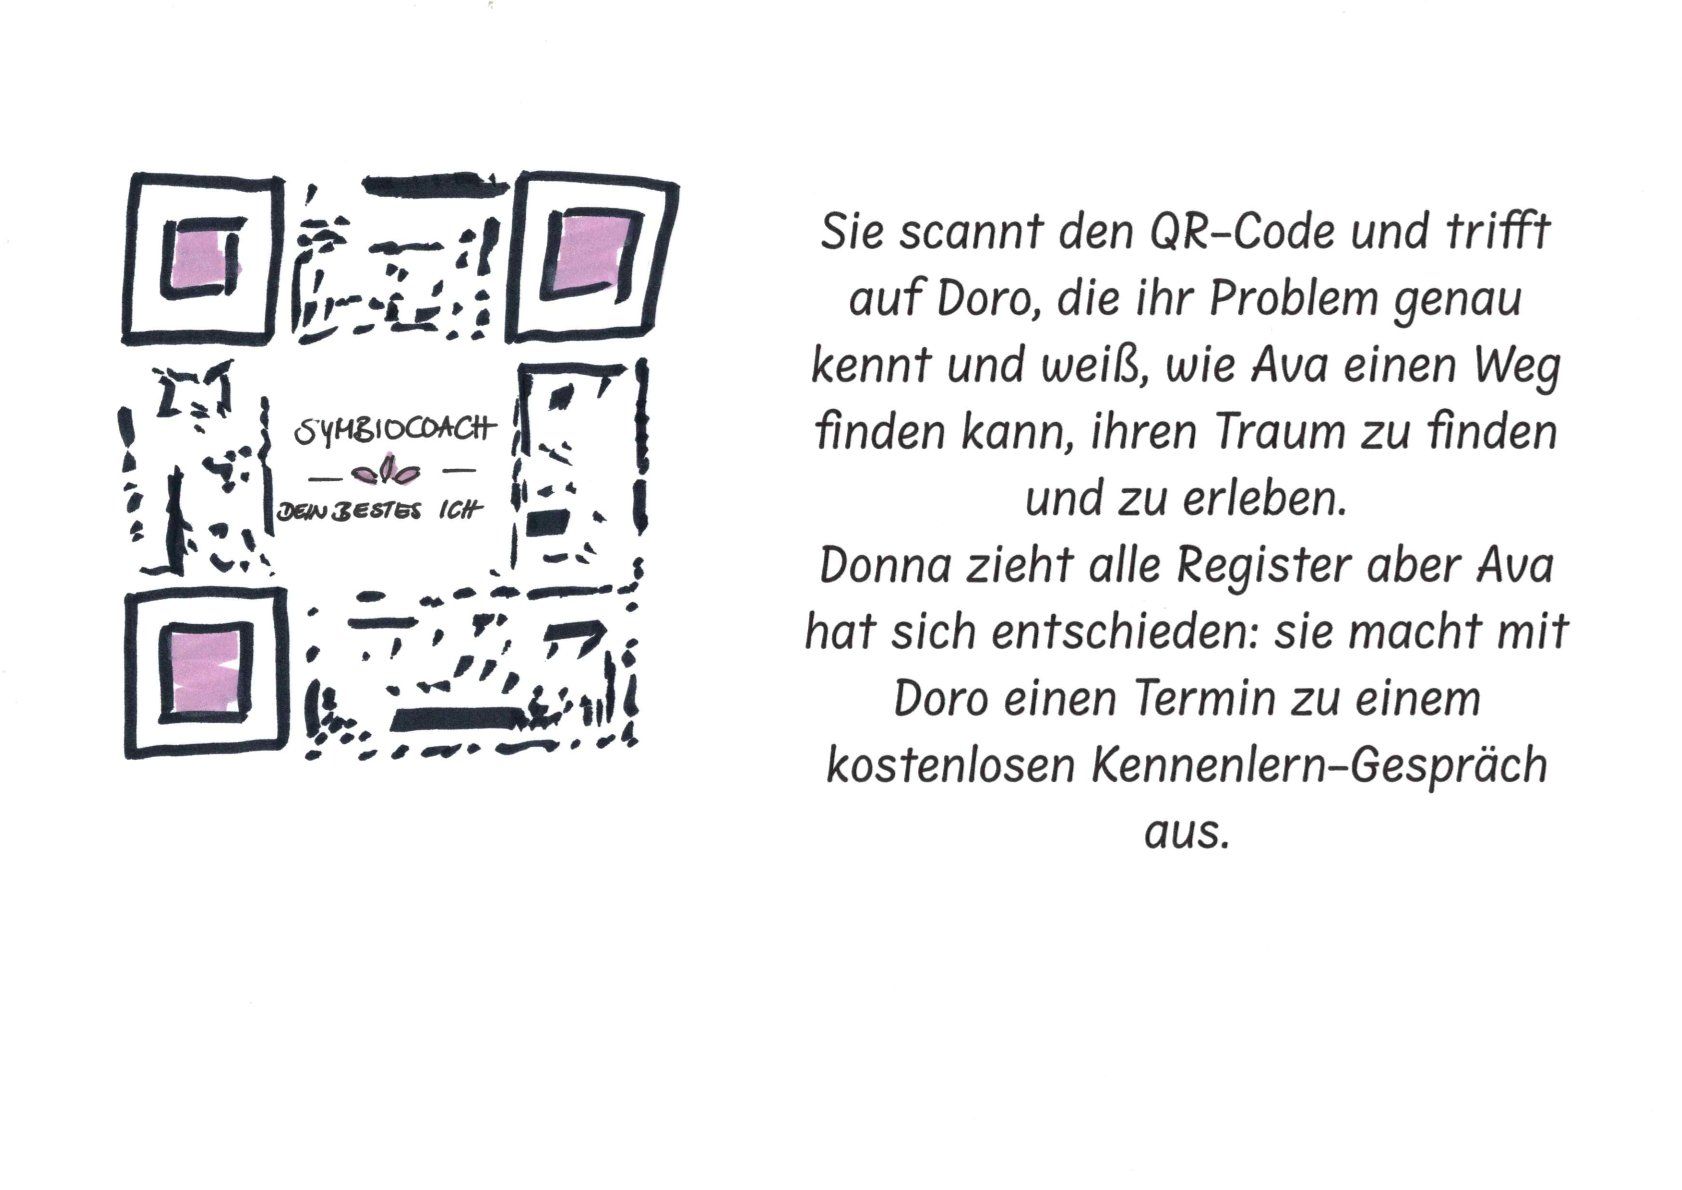 In der Anzeige ist ein QR Code abgebildet, den Ava scannt und auf die Website von Doro gelangt